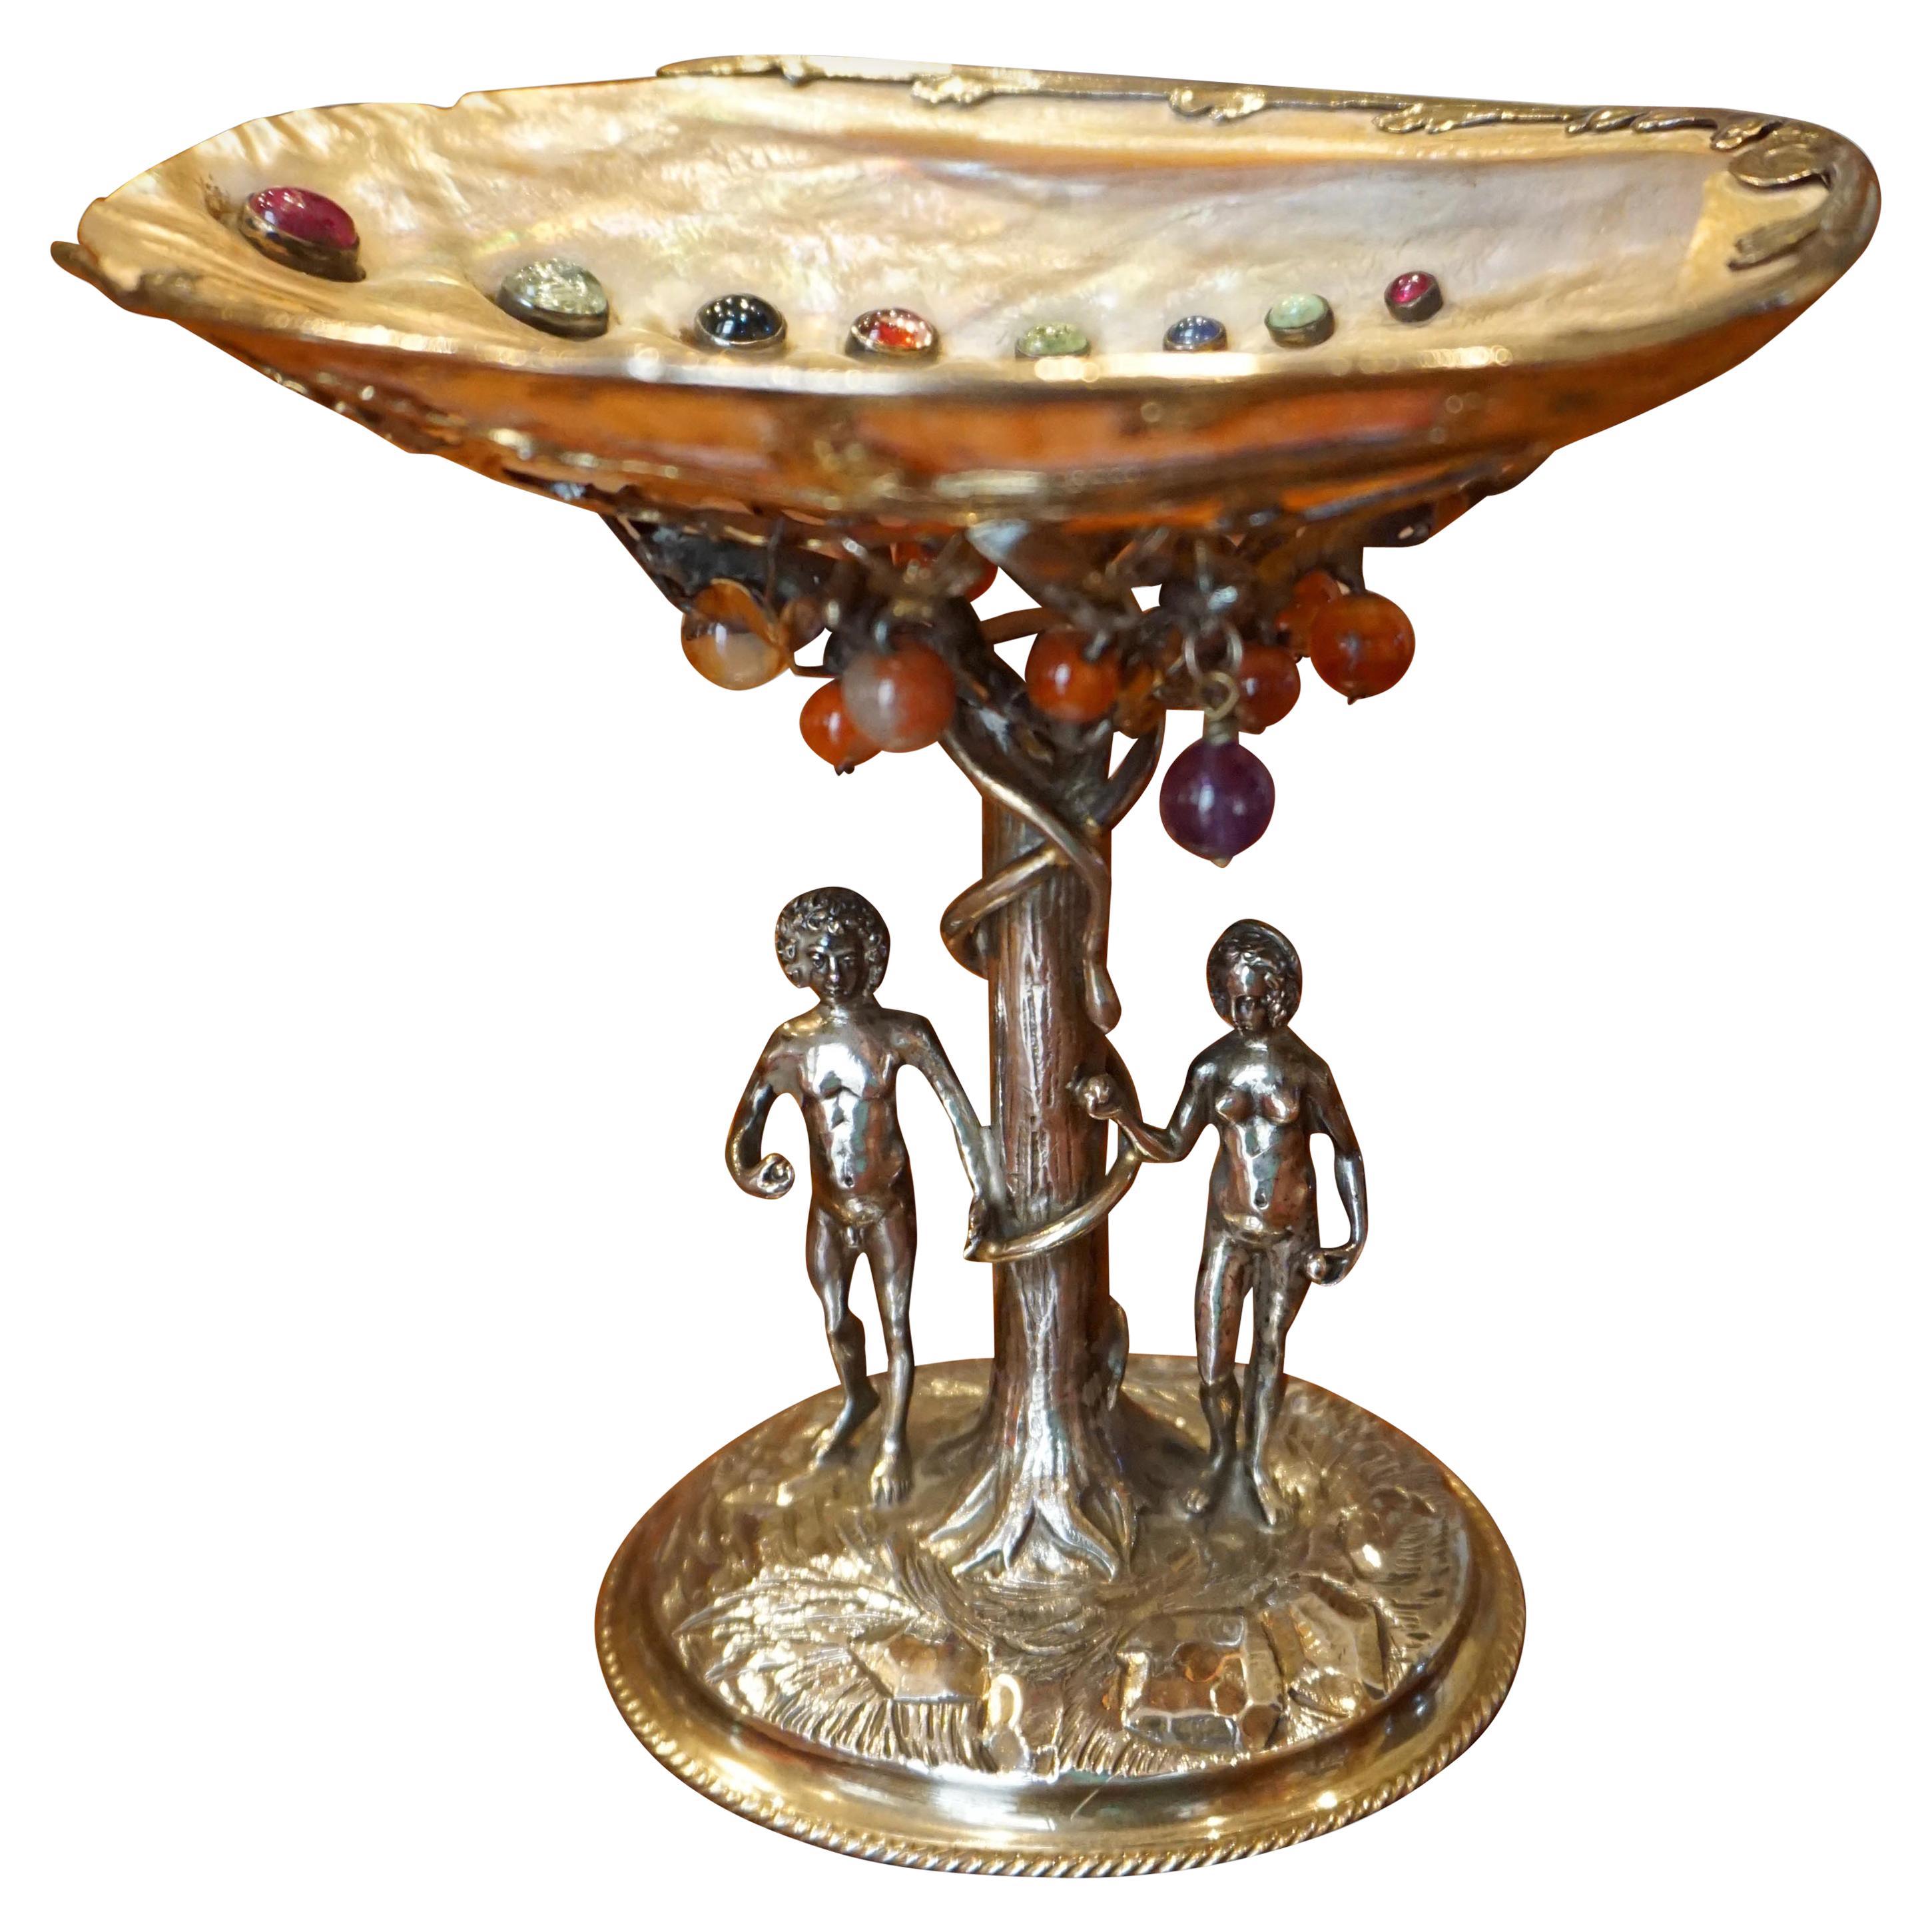 German Silver and Semi-Precious Stone Baroque Style Adam and Eve Theme Tazza